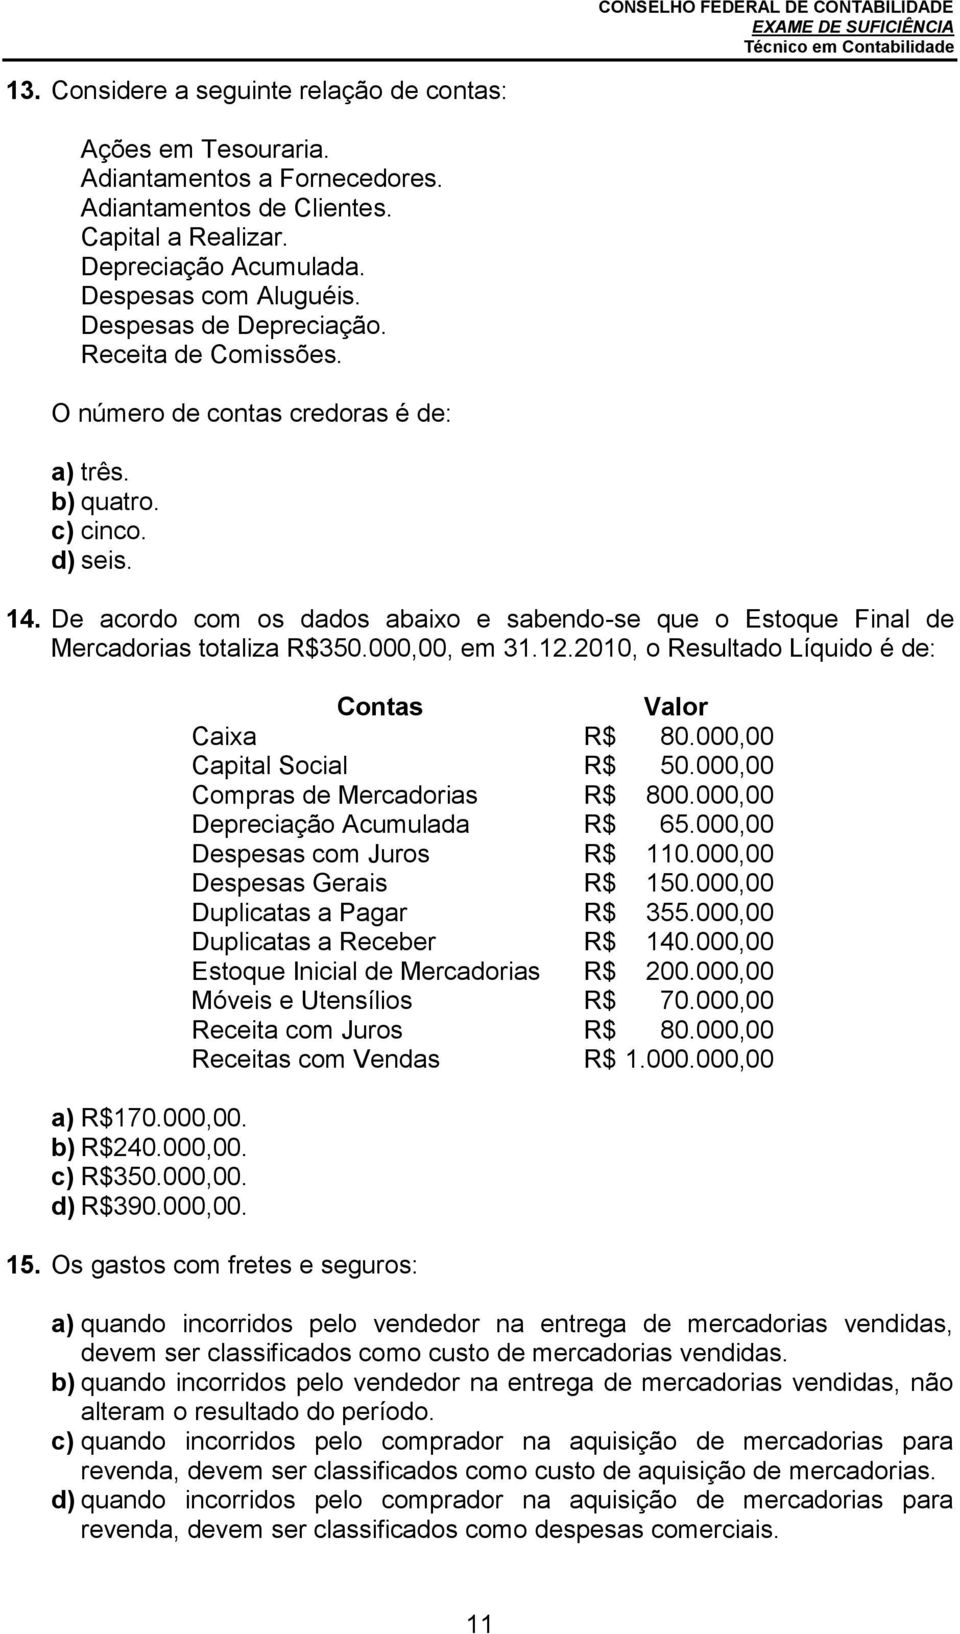 De acordo com os dados abaixo e sabendo-se que o Estoque Final de Mercadorias totaliza R$350.000,00, em 31.12.2010, o Resultado Líquido é de: a) R$170.000,00. b) R$240.000,00. c) R$350.000,00. d) R$390.